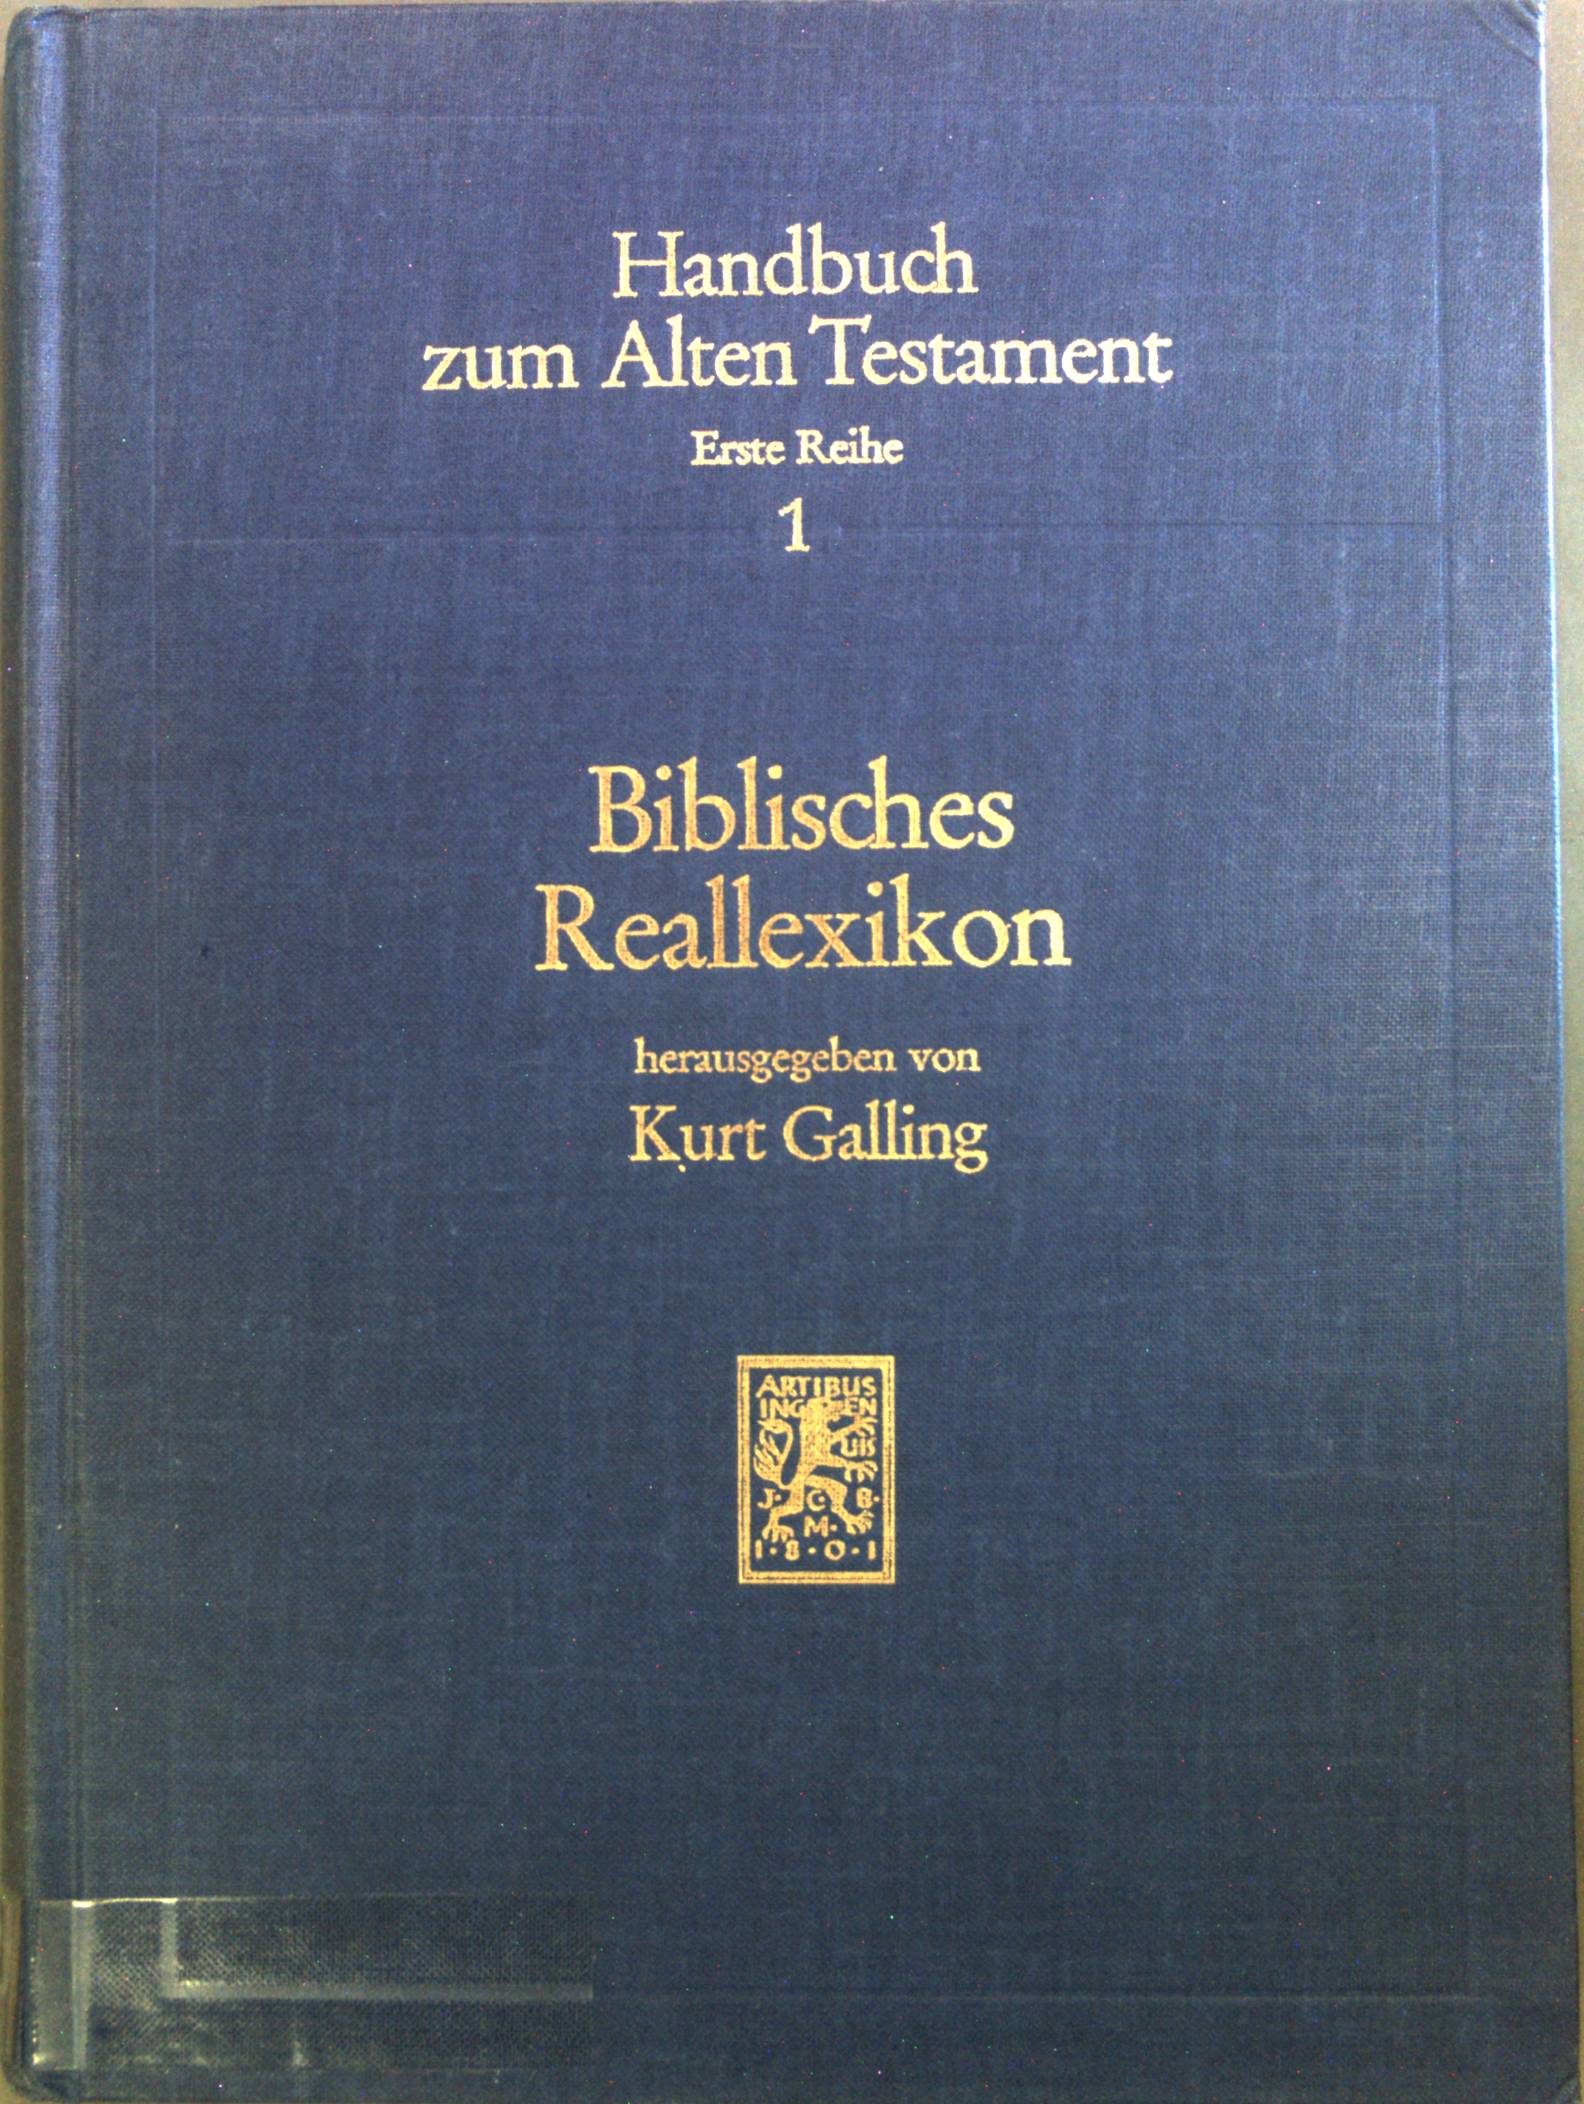 Biblisches Reallexikon : (BRL). Handbuch zum Alten Testament. Erste Reihe. - Galling, Kurt